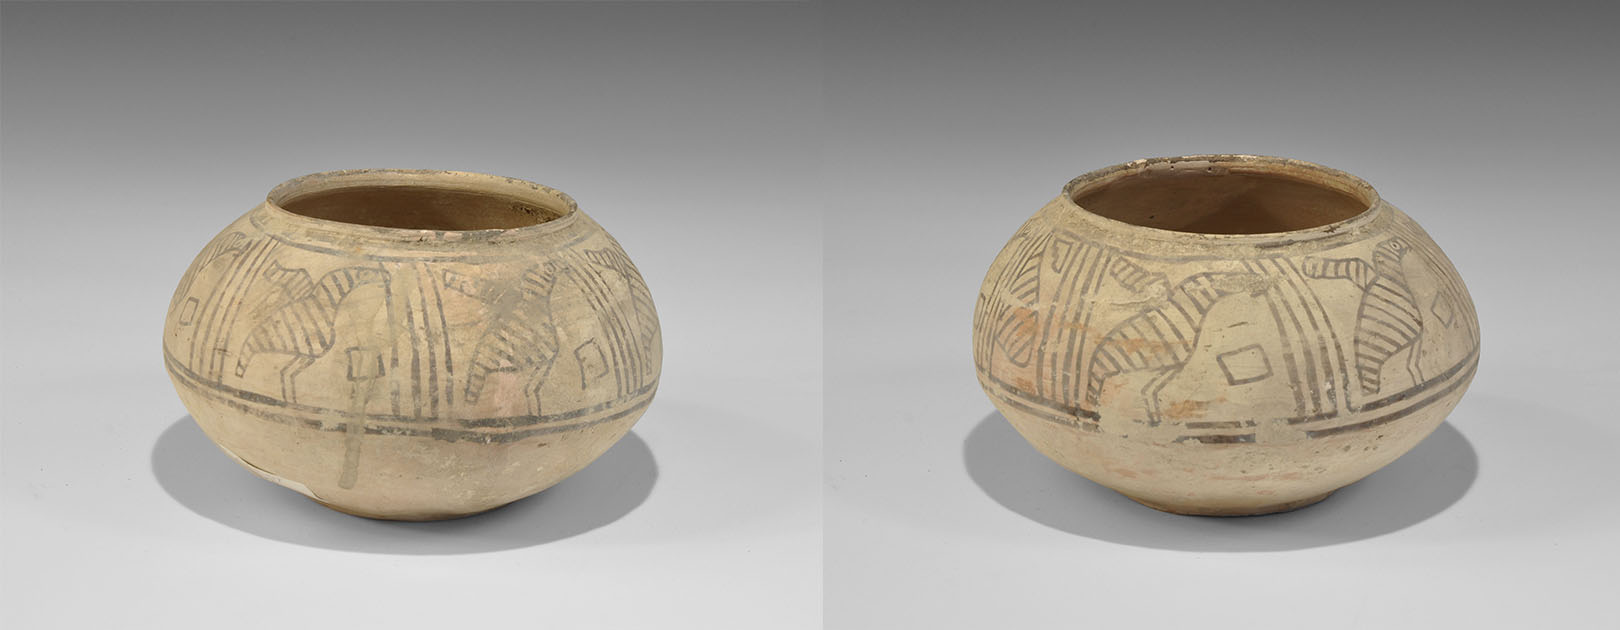 Indus Valley Mehrgarh Bichrome Ceramic Figural Jar